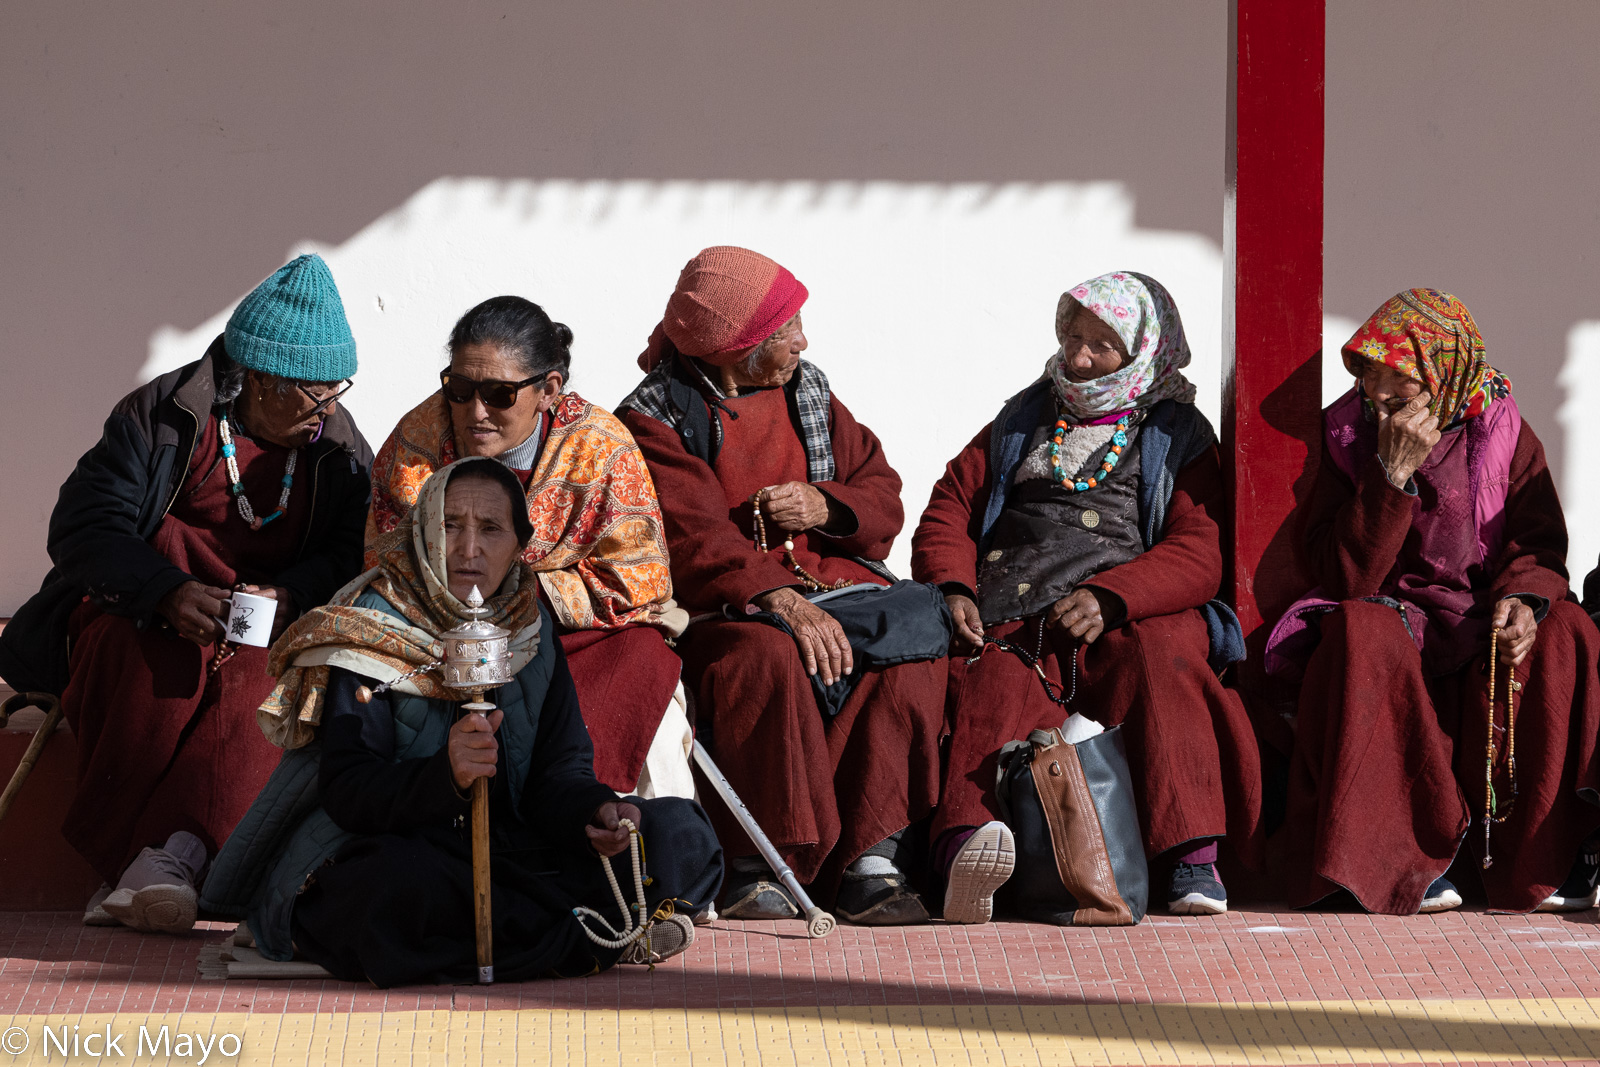 Women at the winter festival held in the Takthok monastery in Sakti.